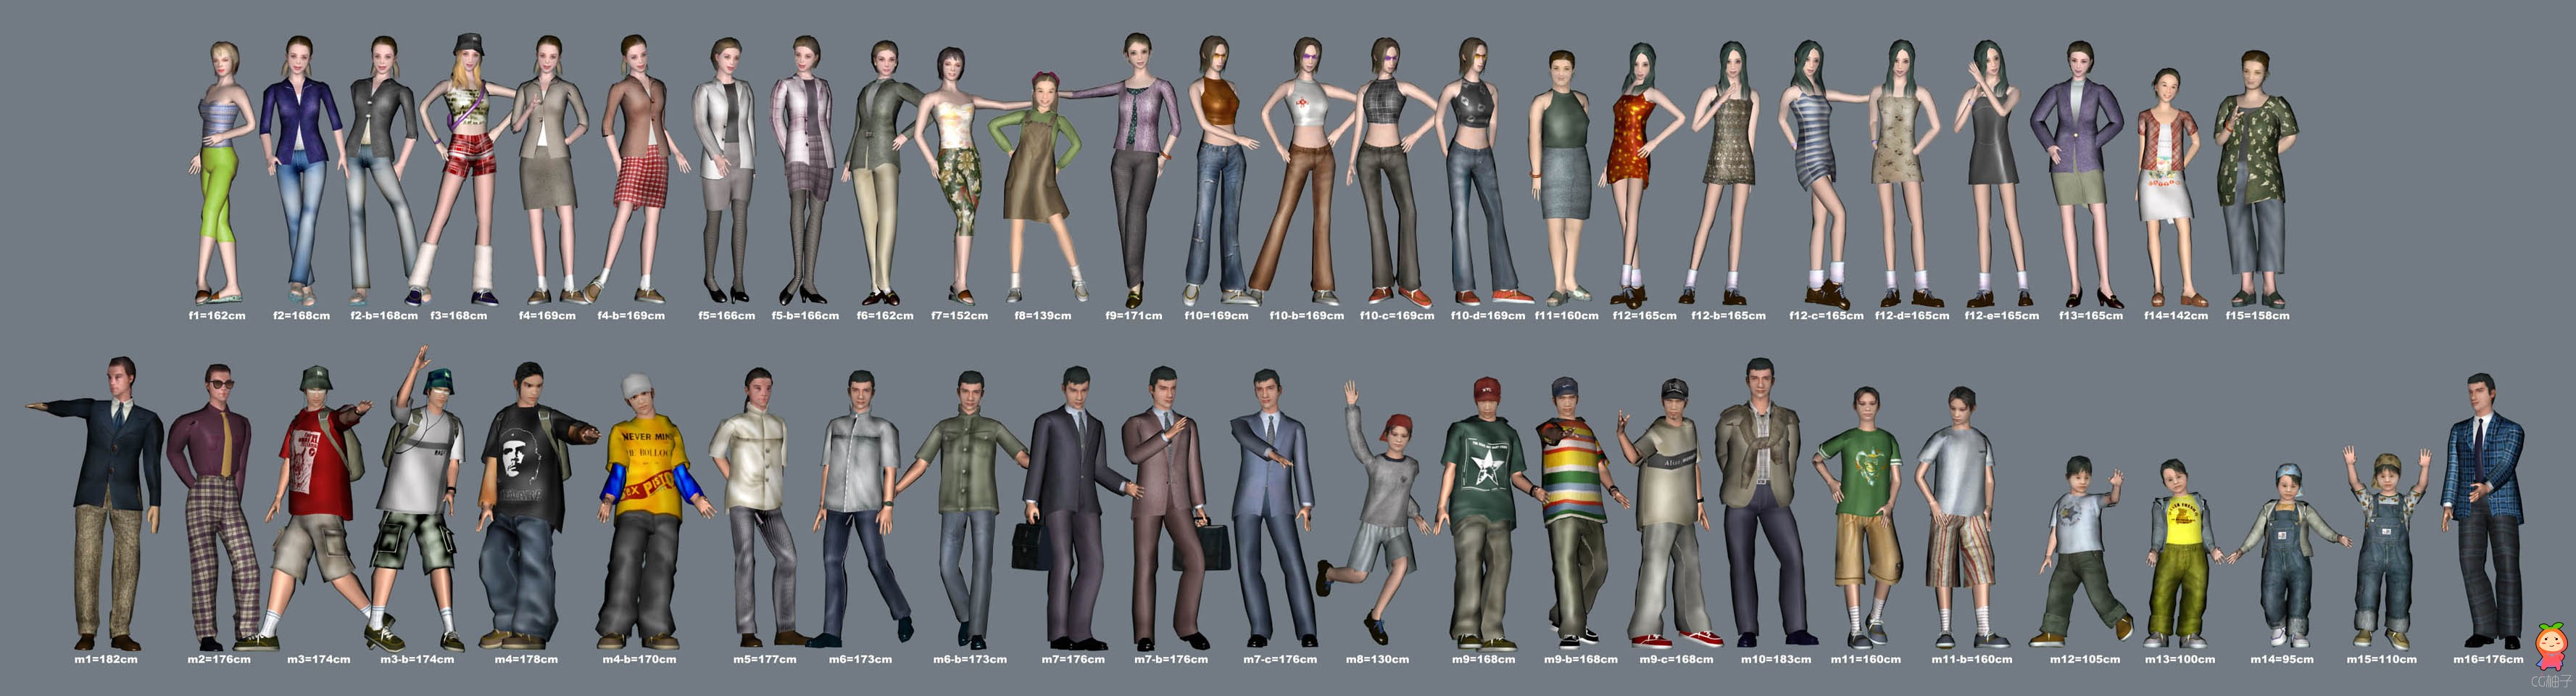 [免费人物模型] 现代人物3D模型 各种特色的3d角色模型下载